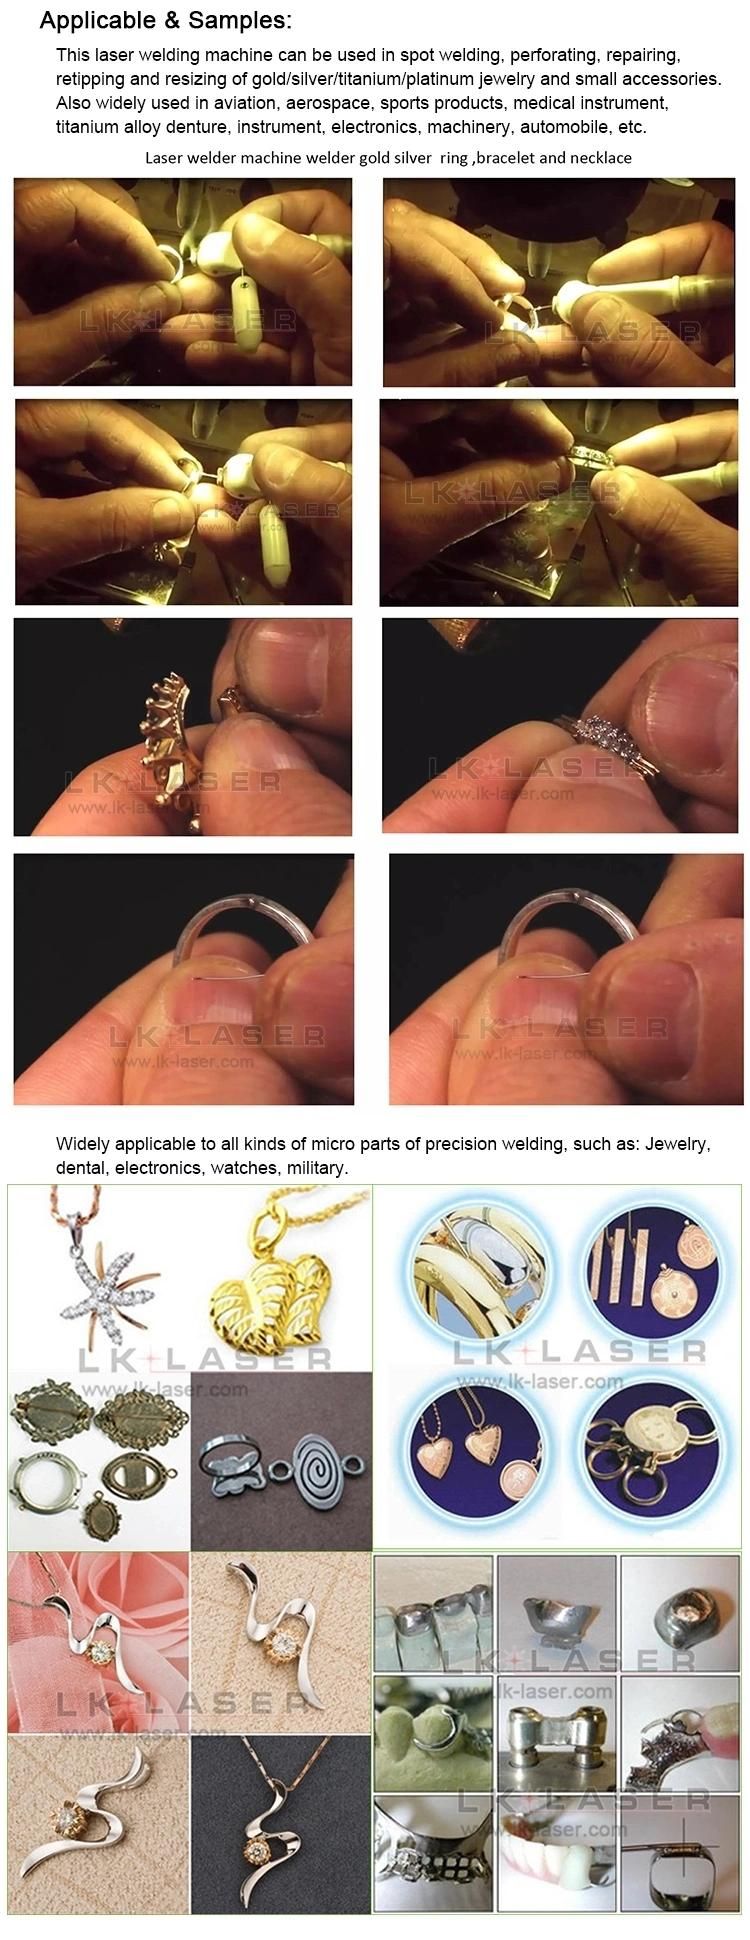 Jewelry Laser Welding Equipment Jewelry Repair Tools Laser Welder for Jewelry